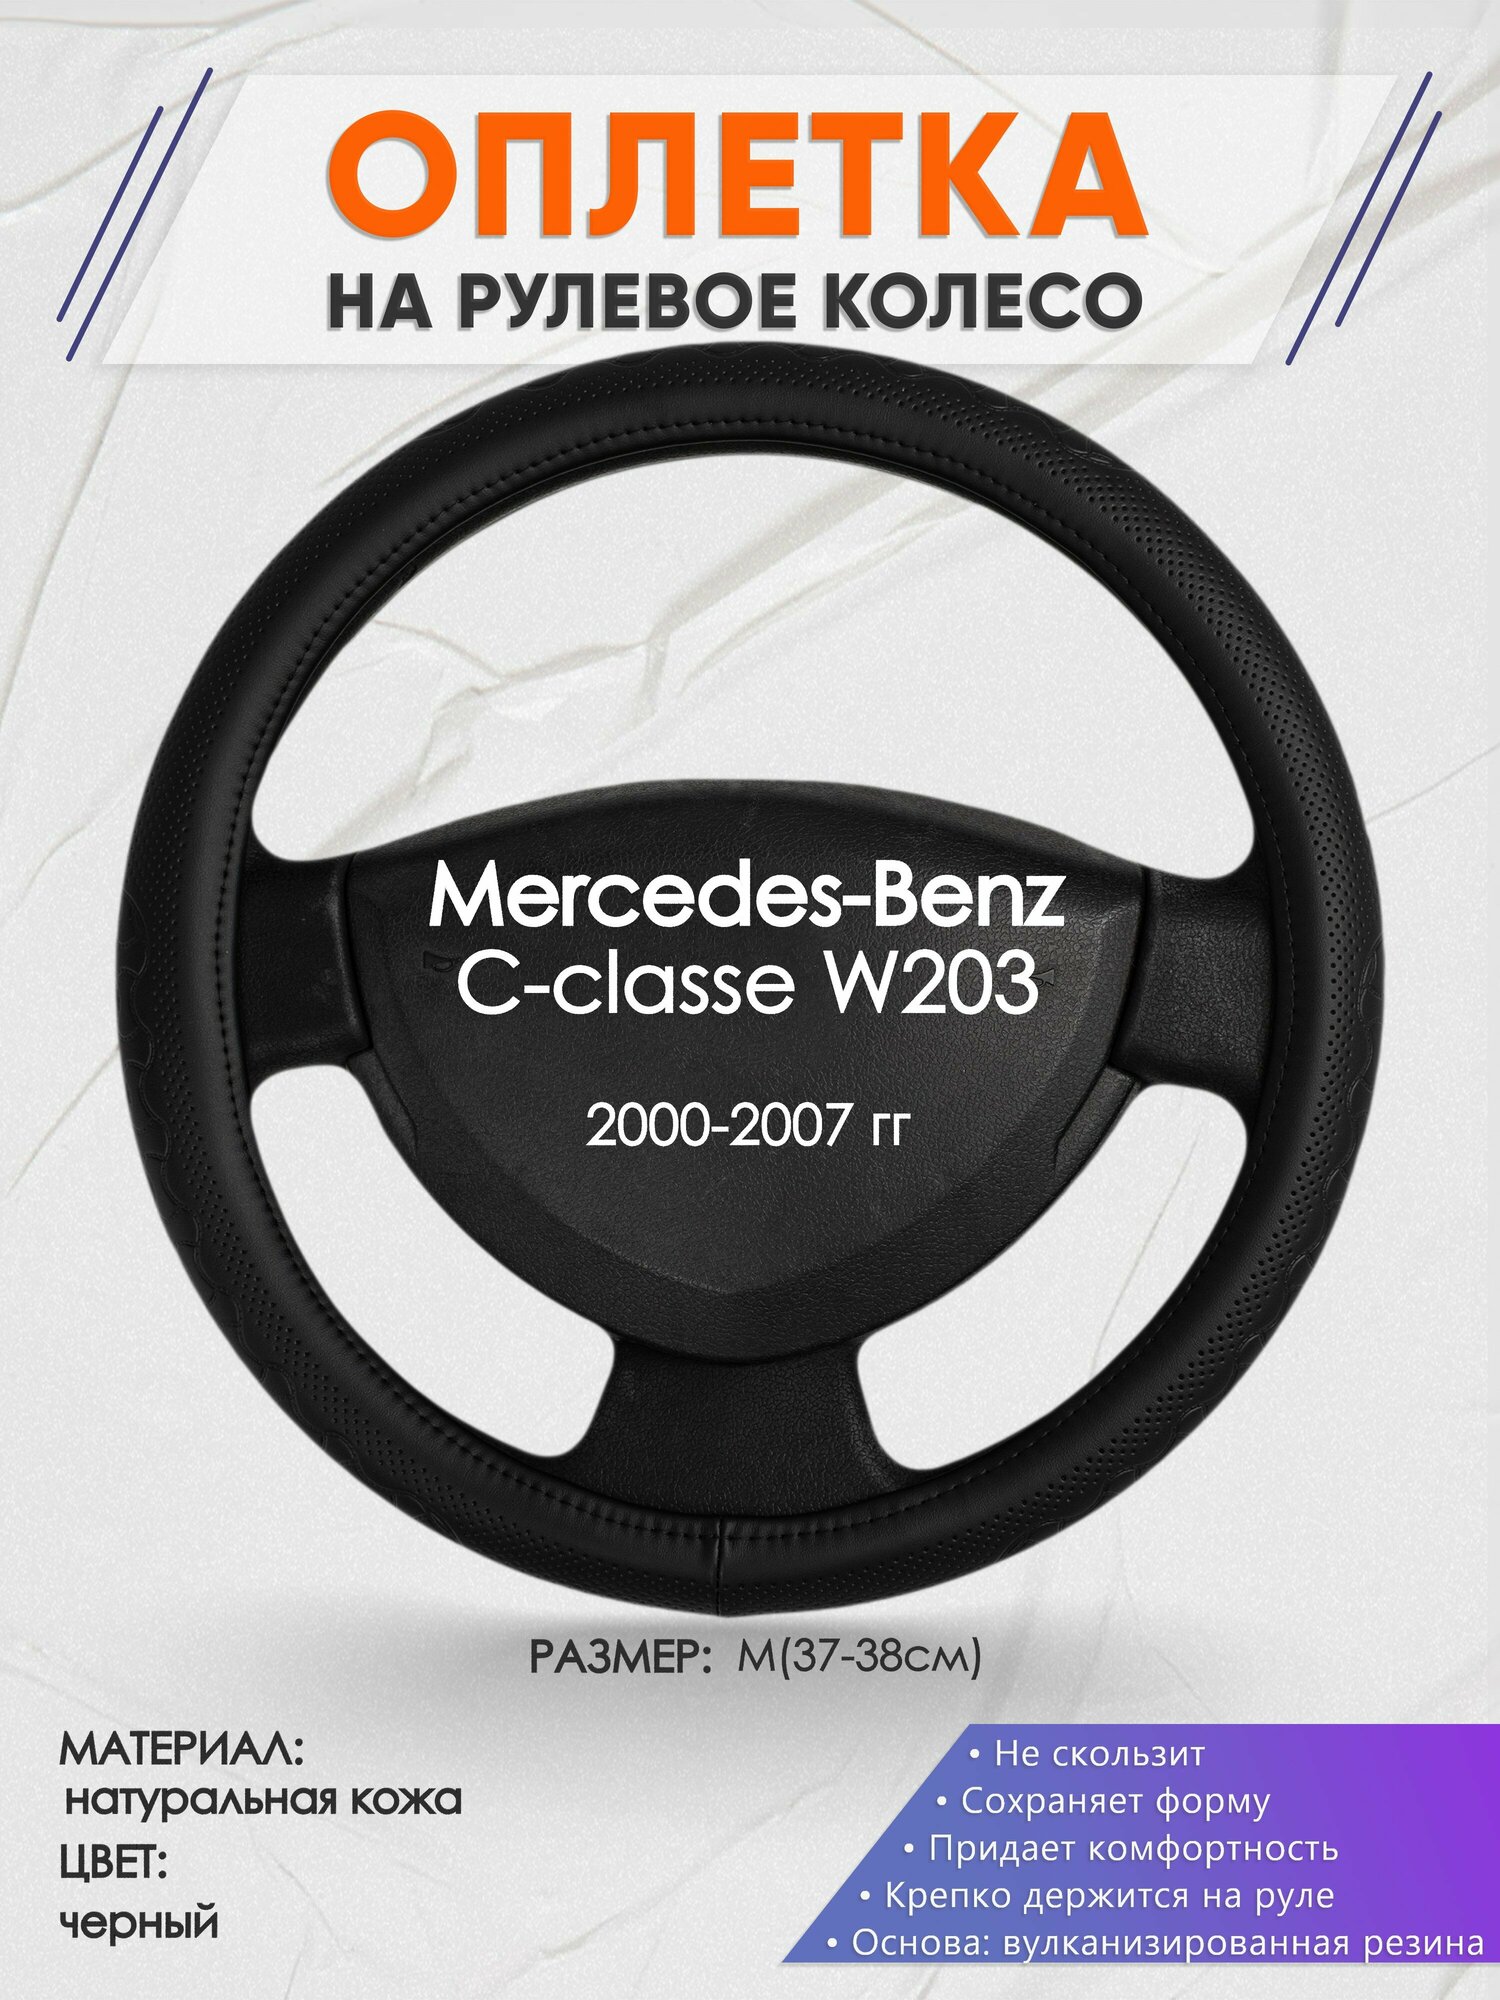 Оплетка на руль для Mercedes-Benz W203(Мерседес Бенц Ц класс в203) 2000-2007, M(37-38см), Натуральная кожа 25